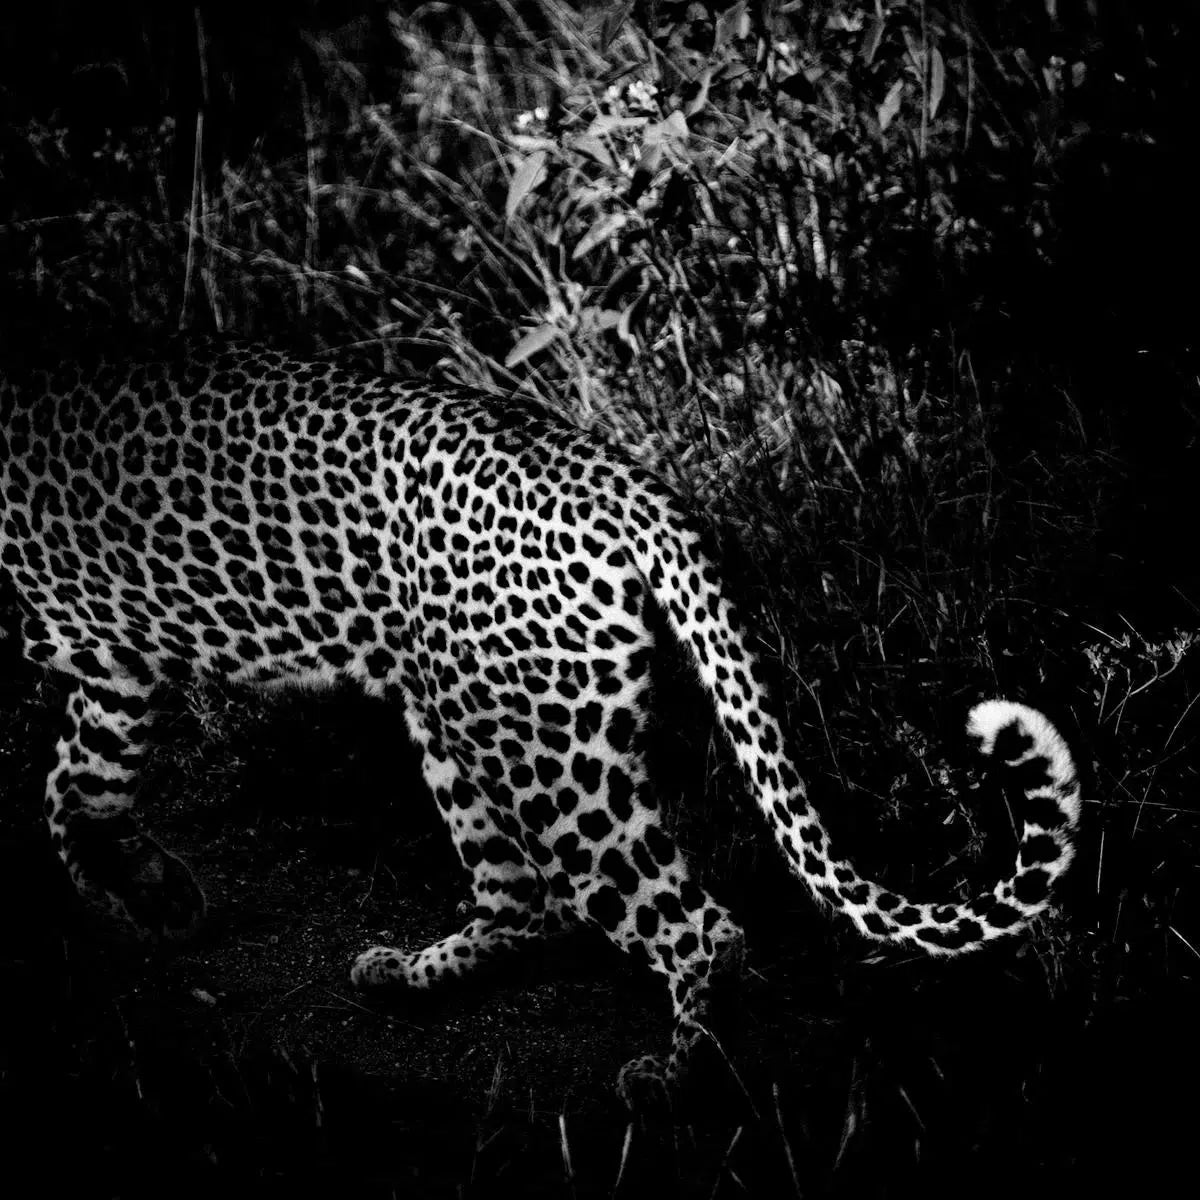 Leopard's Tail, by Laurent Baheux-PurePhoto